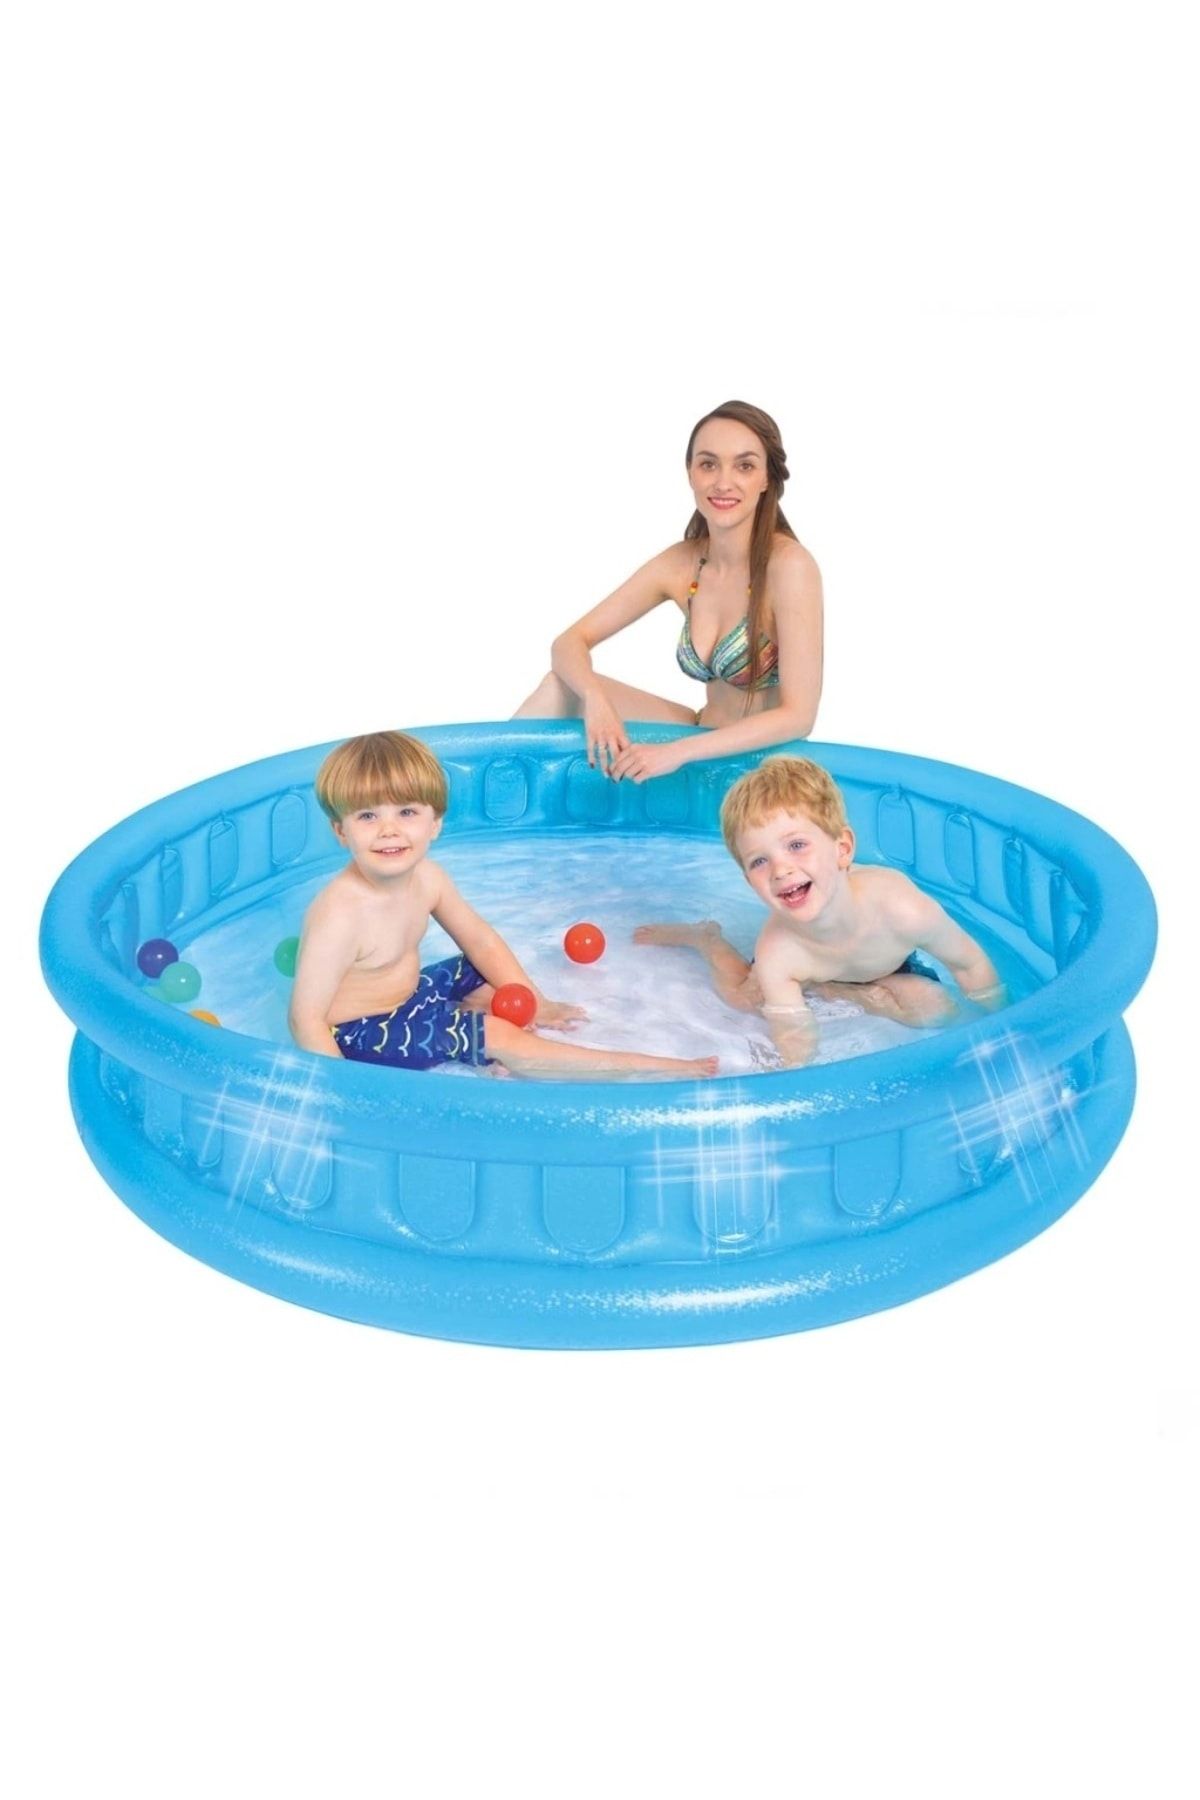 SAZE 51004 Mavi Yuvarlak Havuz Sıcak yaz günlerinde çocuklarınız için çok keyifli bir eğlence aracıdır.